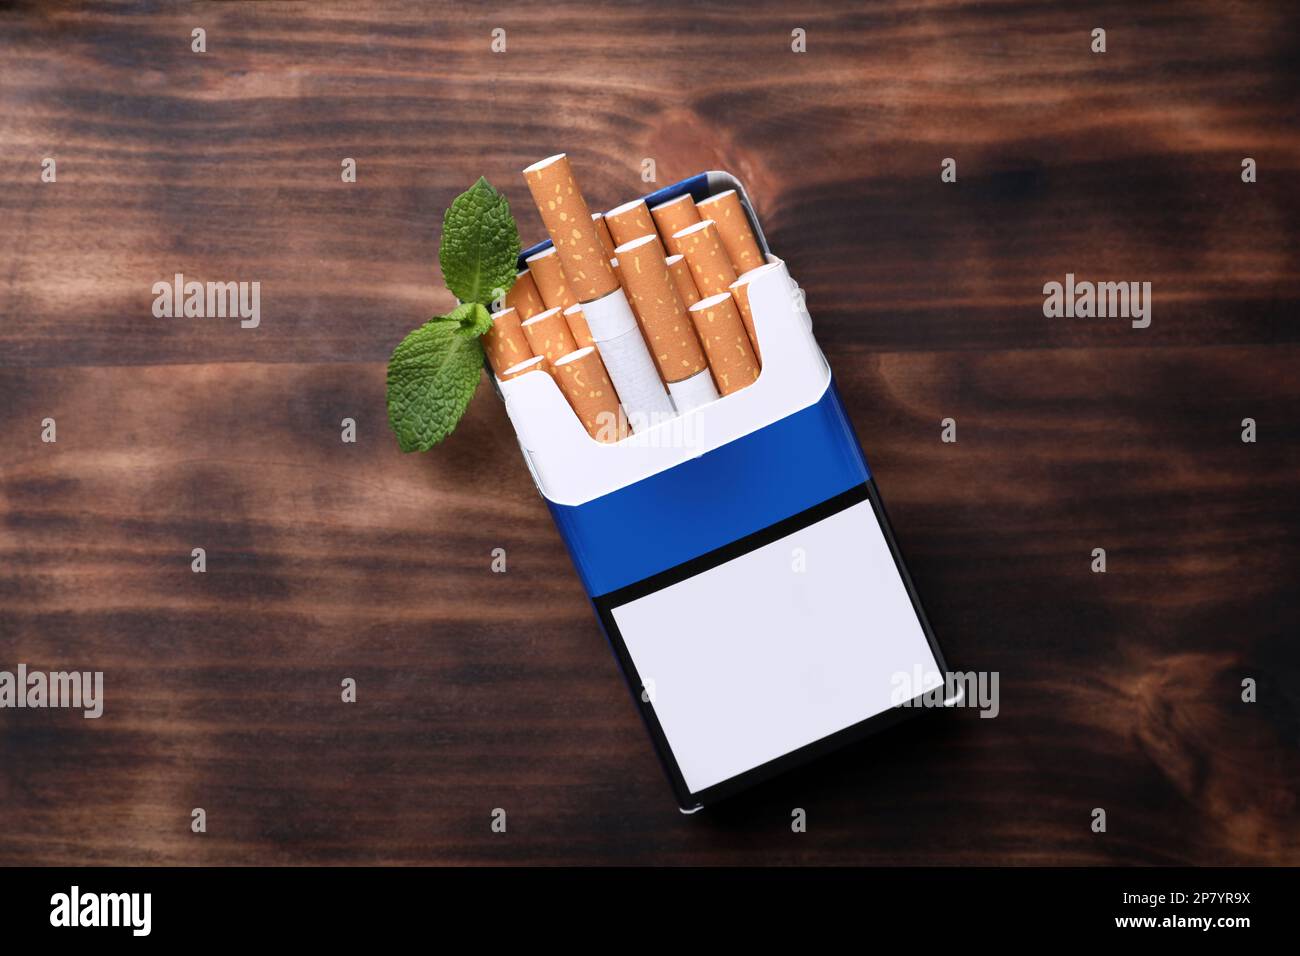 Paquet de cigarettes de menthol et feuilles de menthe sur table en bois, plat Banque D'Images